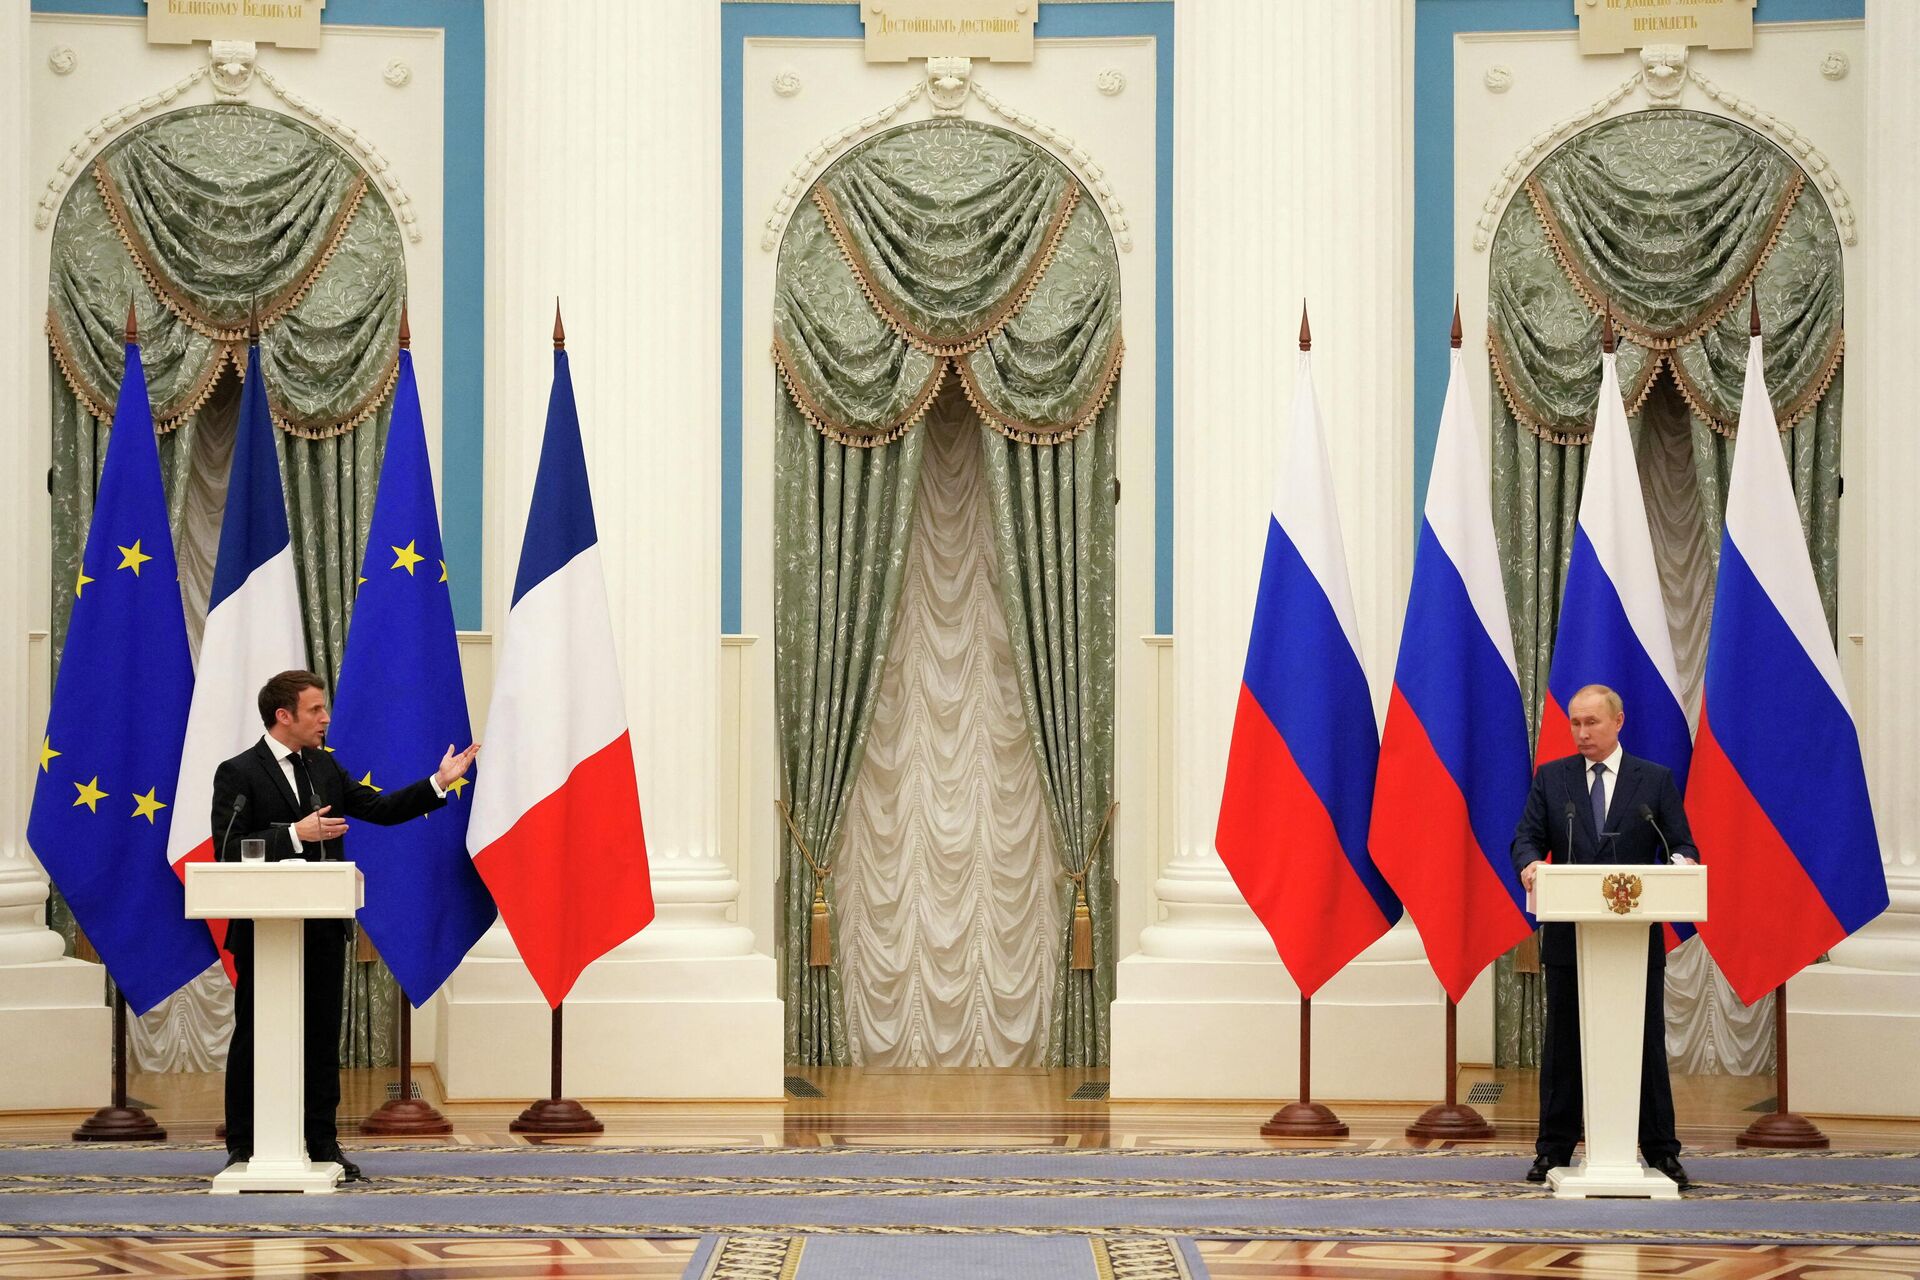 Presidentes da Rússia e da França, Vladimir Putin e Emmanuel Macron, durante coletiva de imprensa conjunta em Moscou, 7 de fevereiro de 2022 - Sputnik Brasil, 1920, 08.02.2022